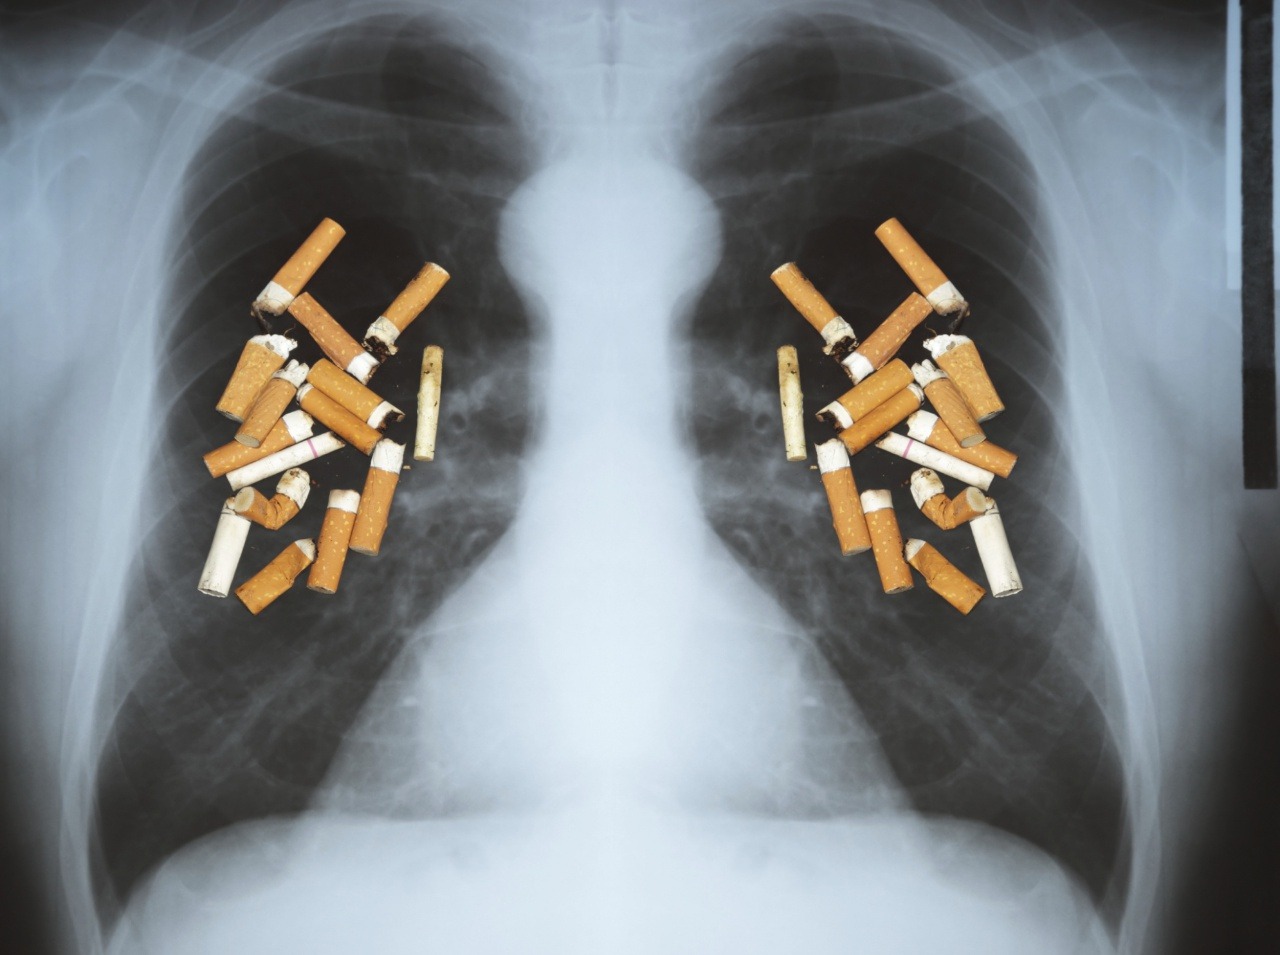 Fajčenie je mimoriadne nebezpečné a zvyšujete si tým riziko vzniku rakoviny pľúc.